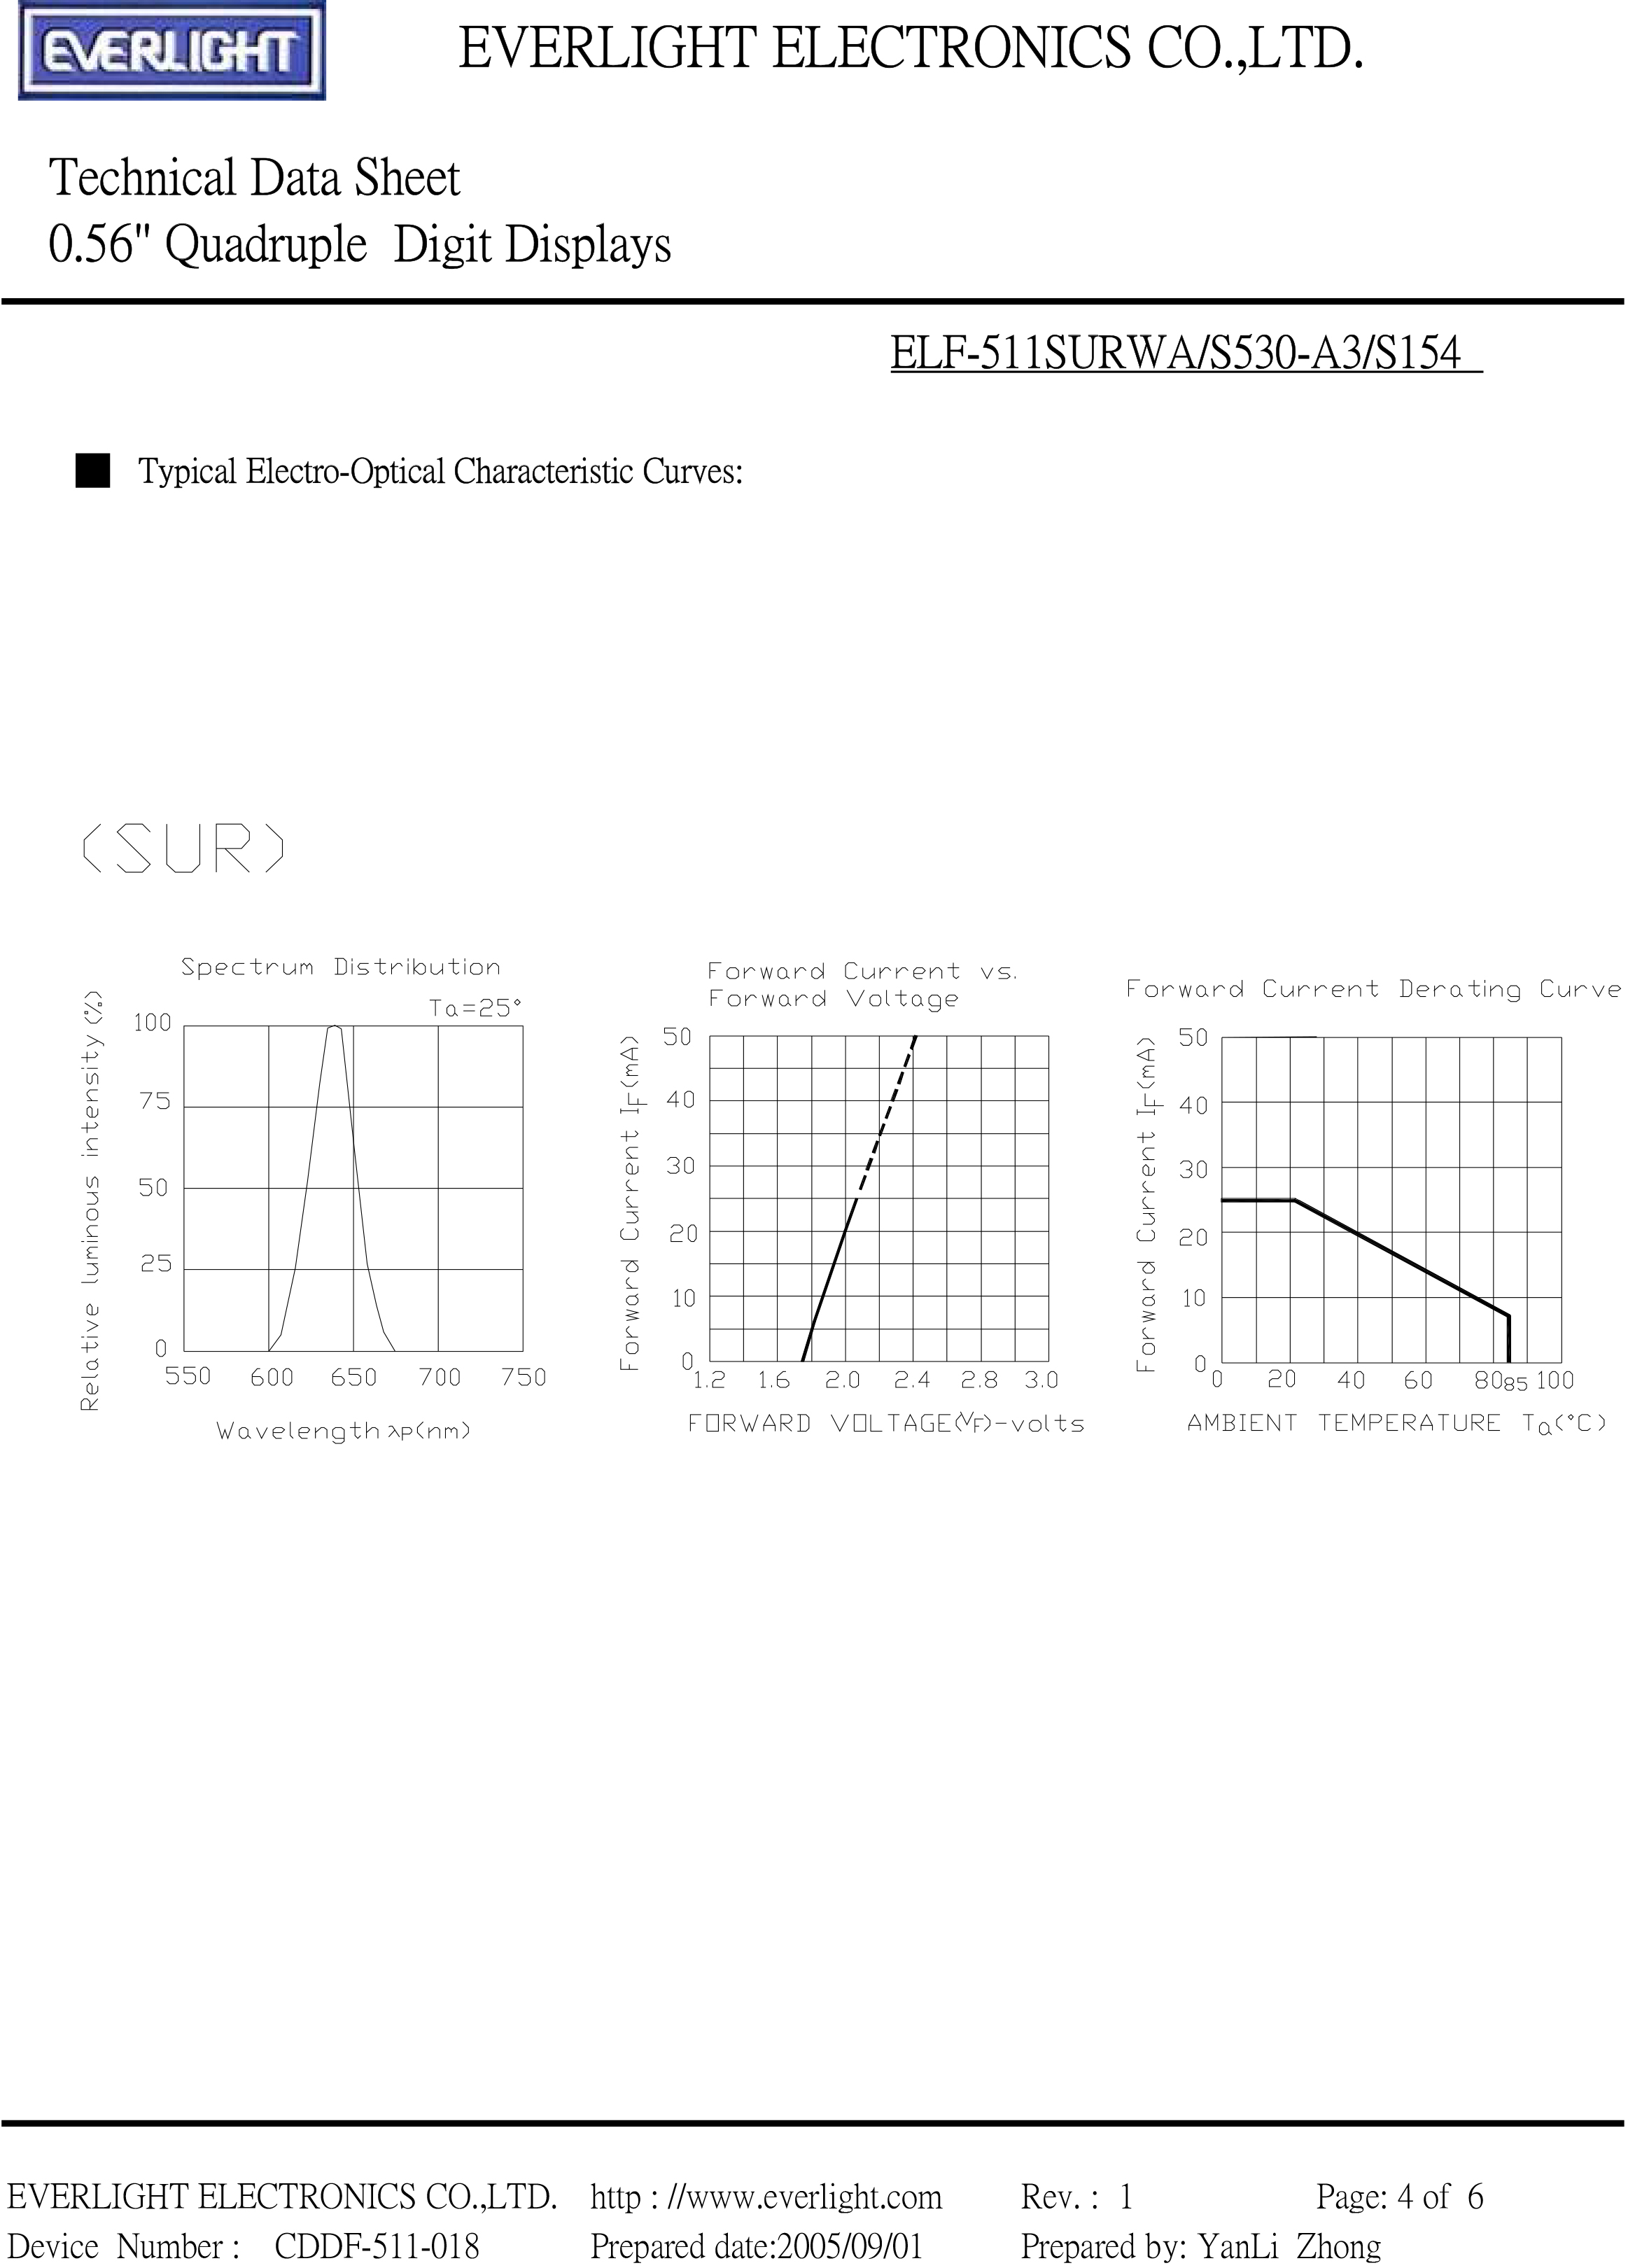 亿光四位直插数码管ELF-511SURWA/S530-A3/S154规格书PDF